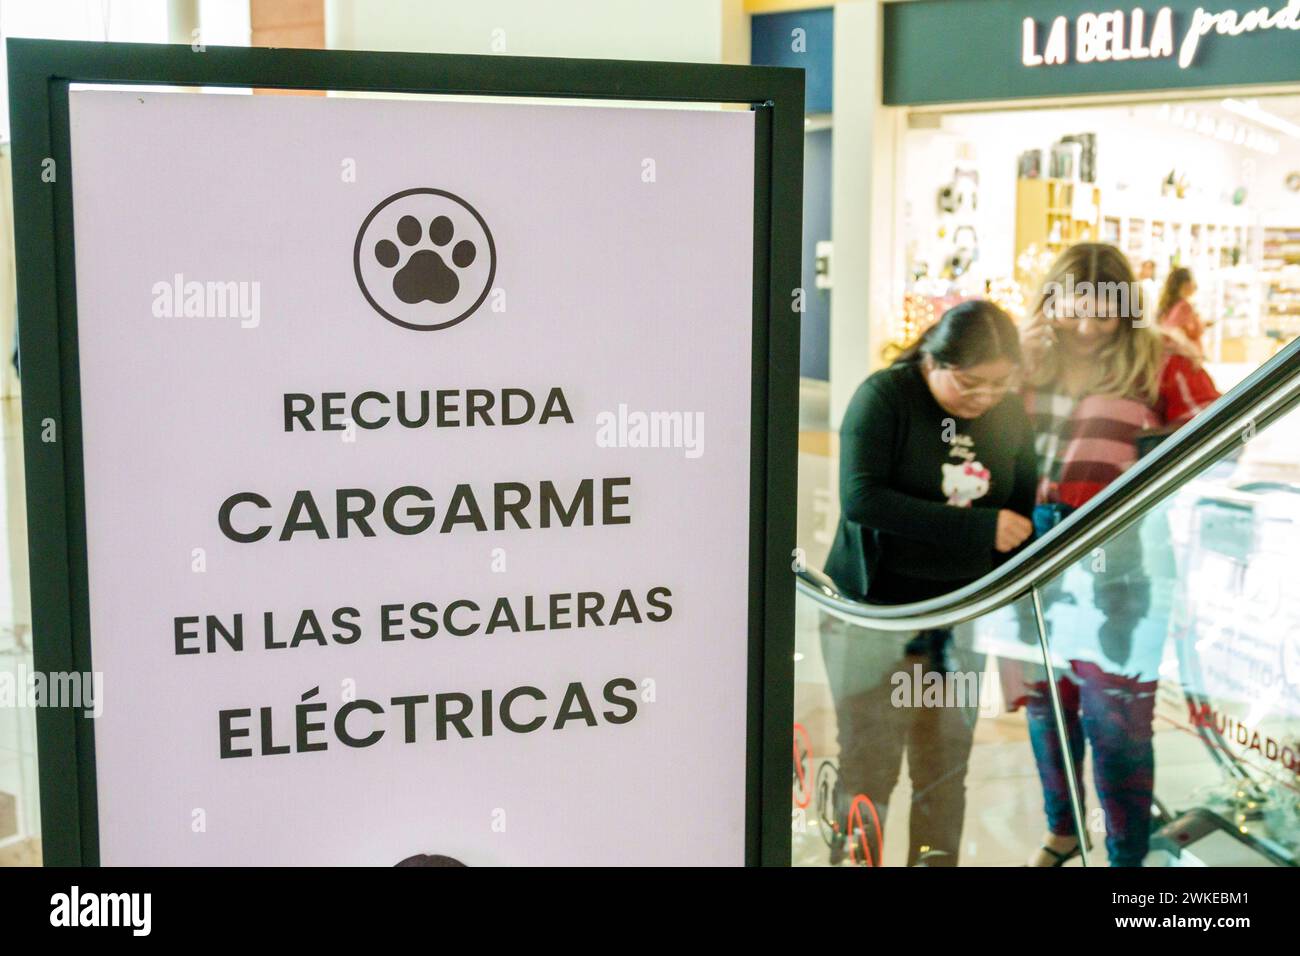 Merida Mexique, Zona Industrial, Galerias Merida centre commercial, intérieur, signe d'avertissement, porter des chiens d'animaux de compagnie vers le bas de l'escalator, femme femme femme femme femme femme FEM Banque D'Images